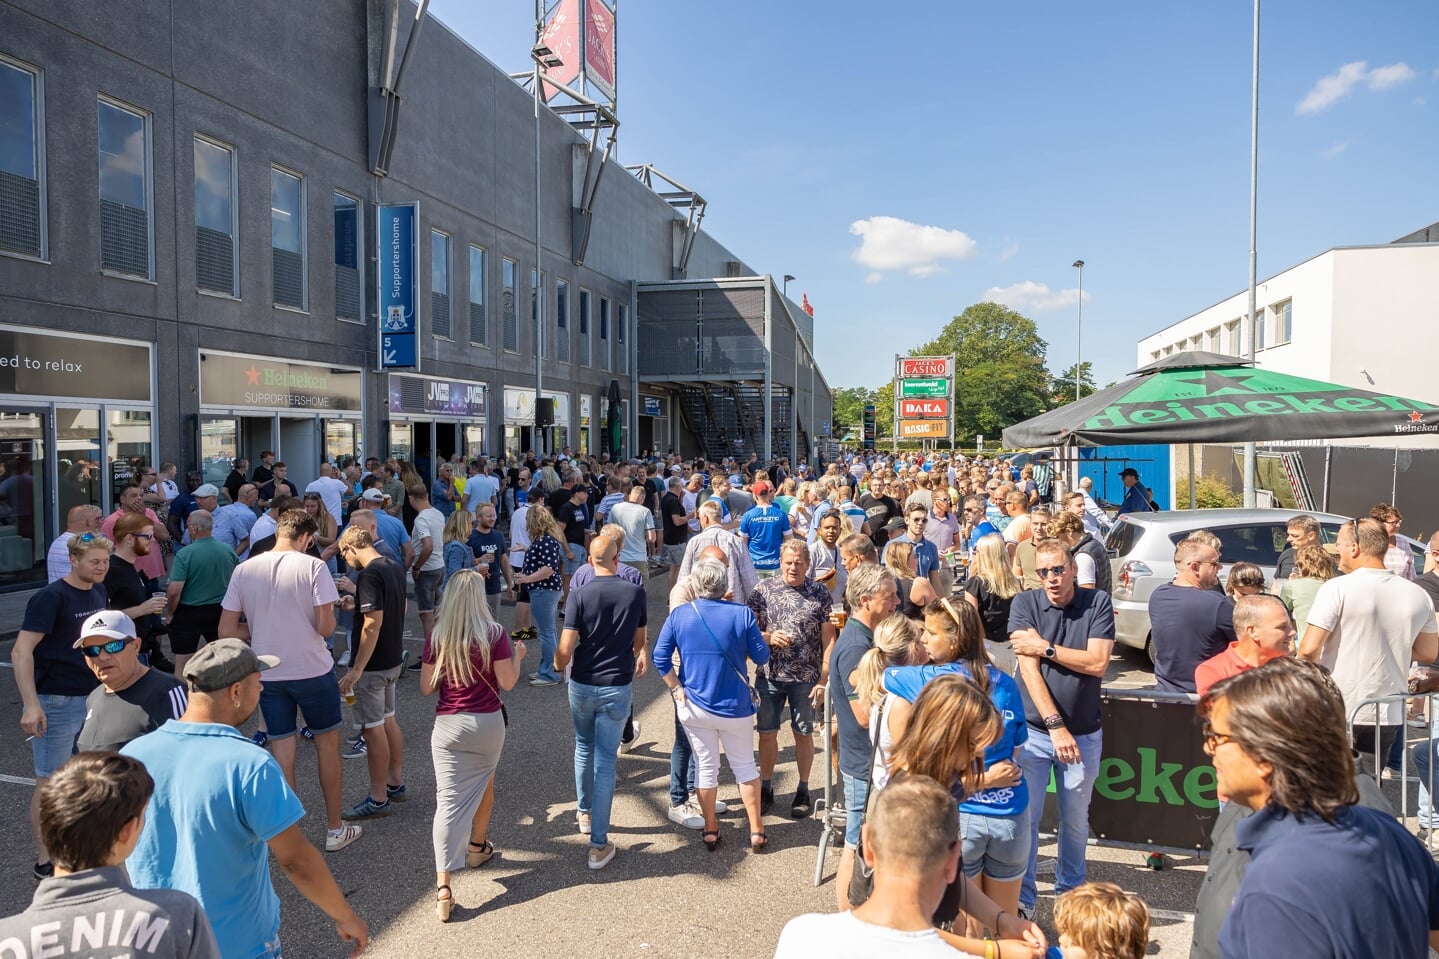 De supporters wisten zondagmiddag hun weg weer te vinden naar het PEC Zwolle stadion.